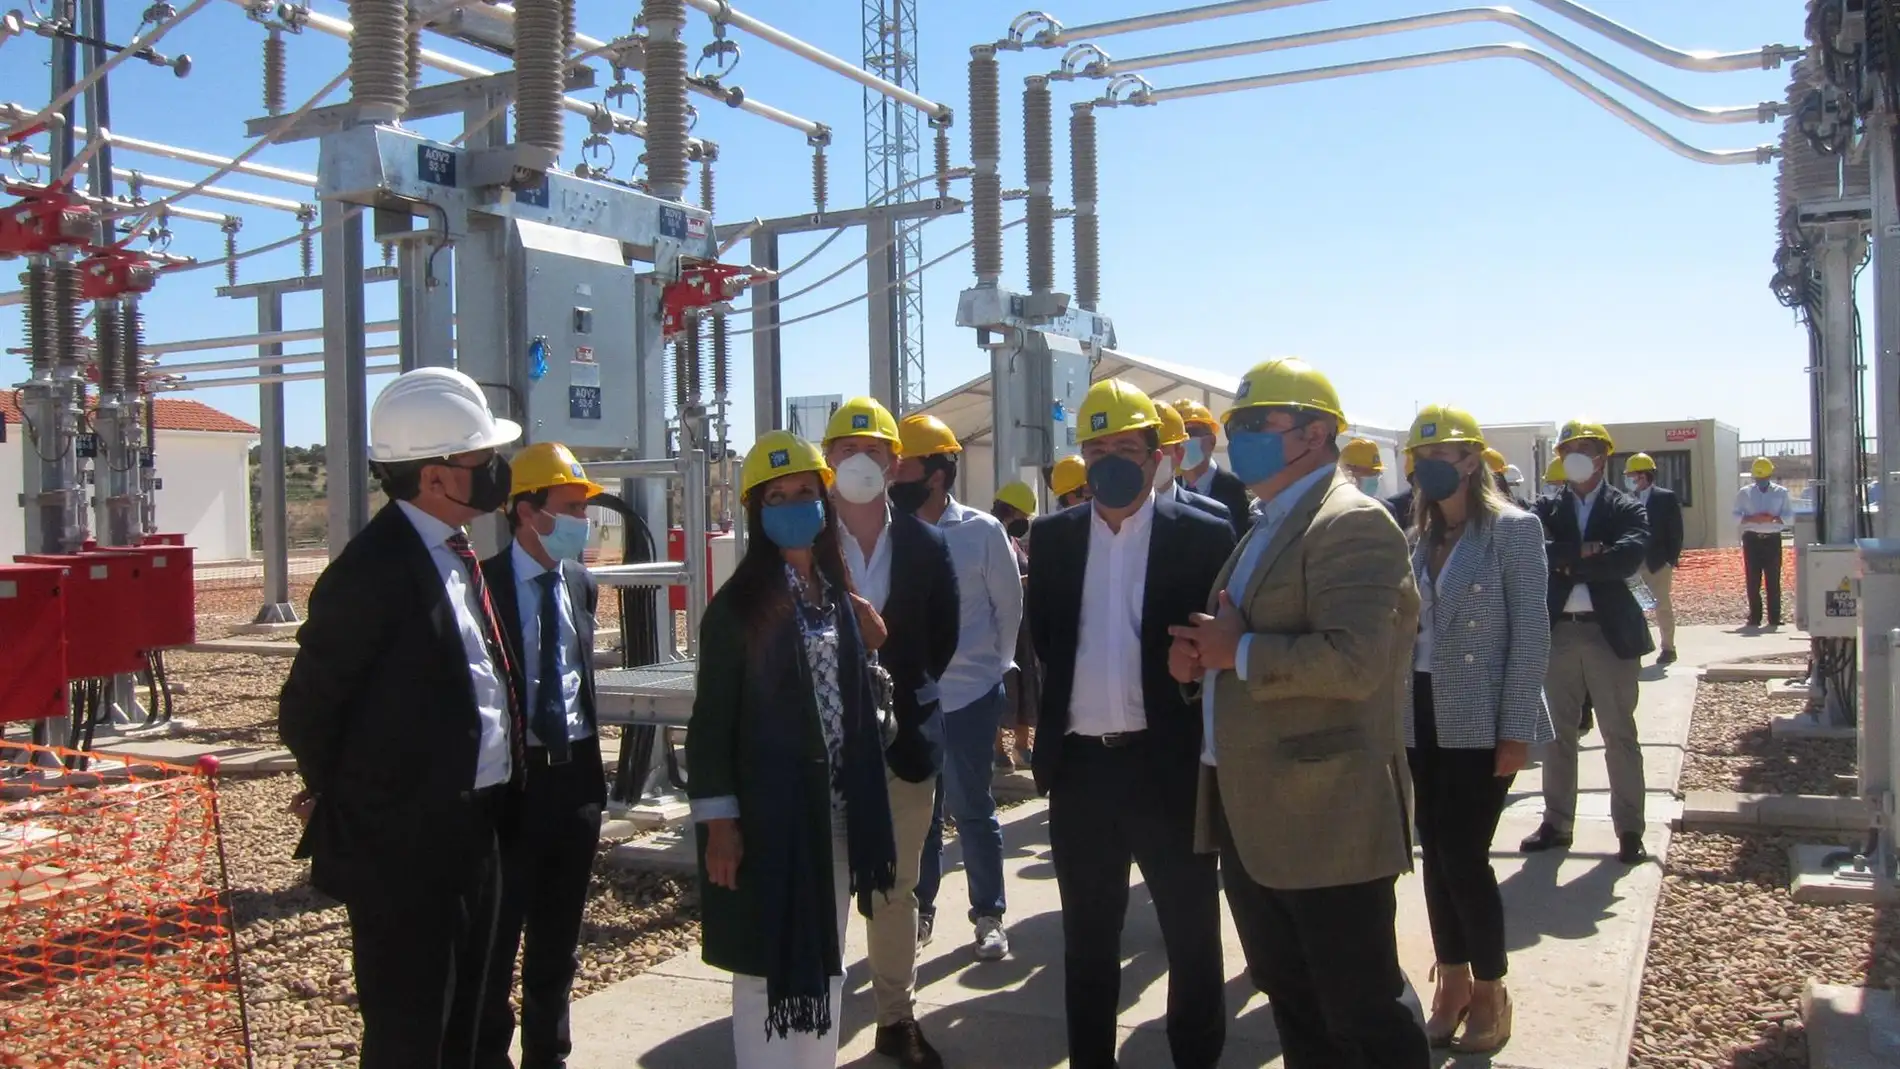 Red Eléctrica impulsará inversiones en infraestructuras eléctricas en Extremadura por 136 millones durante tres años